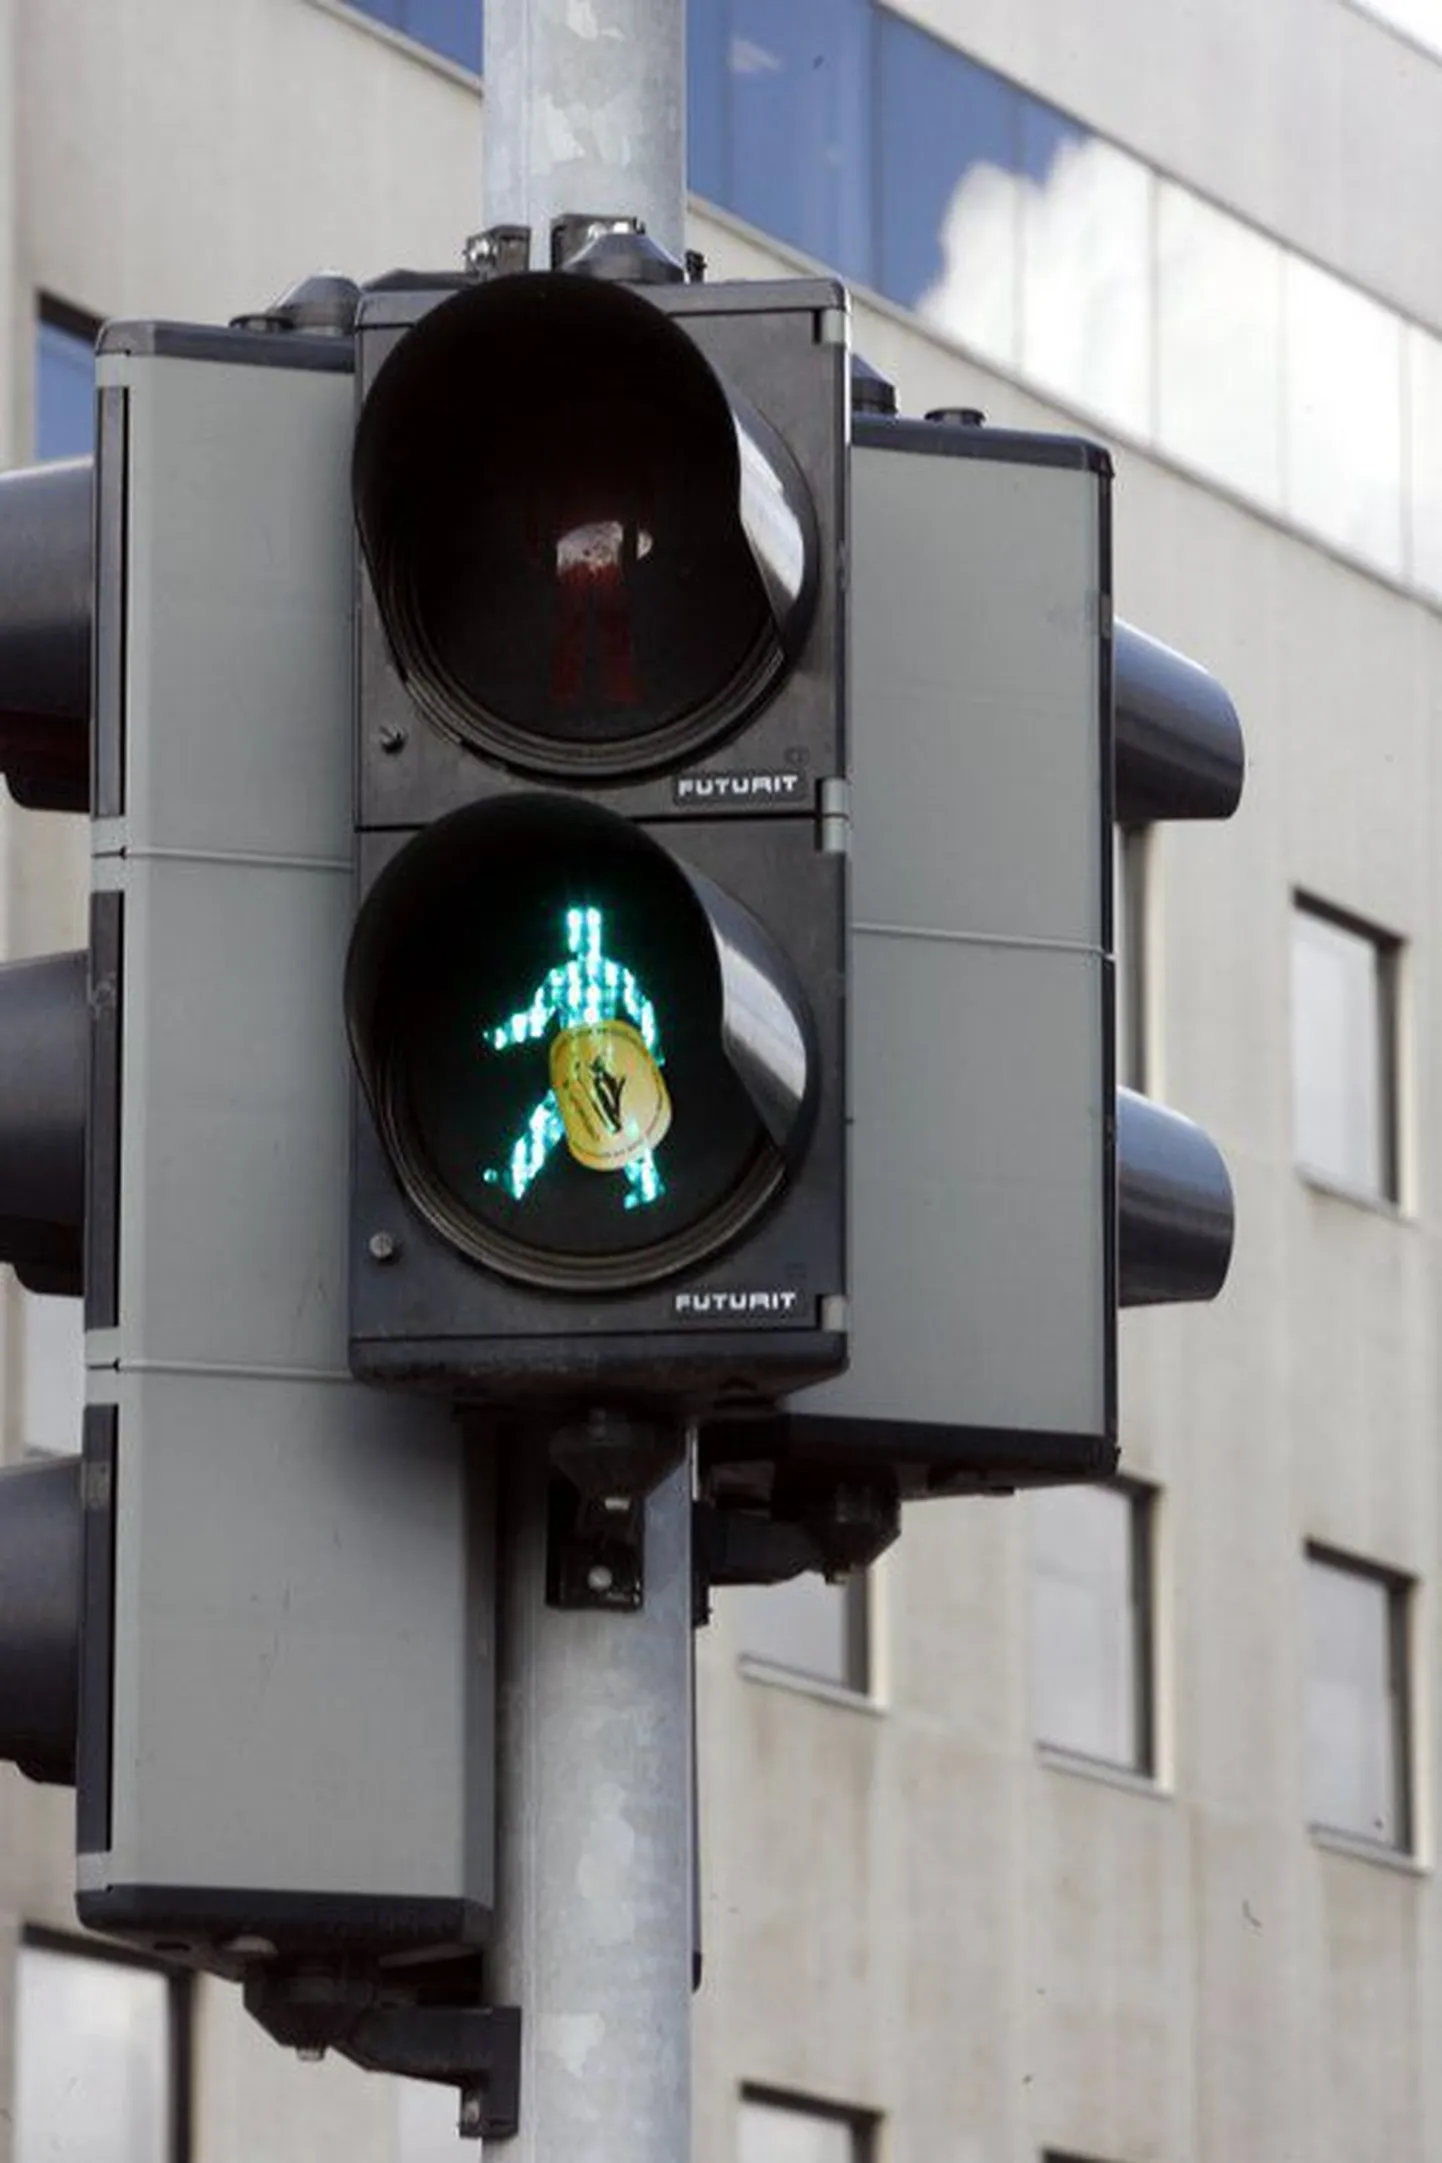 Зеленый сигнал светофора еще не гарантирует пешеходу безопасный переход улицы.